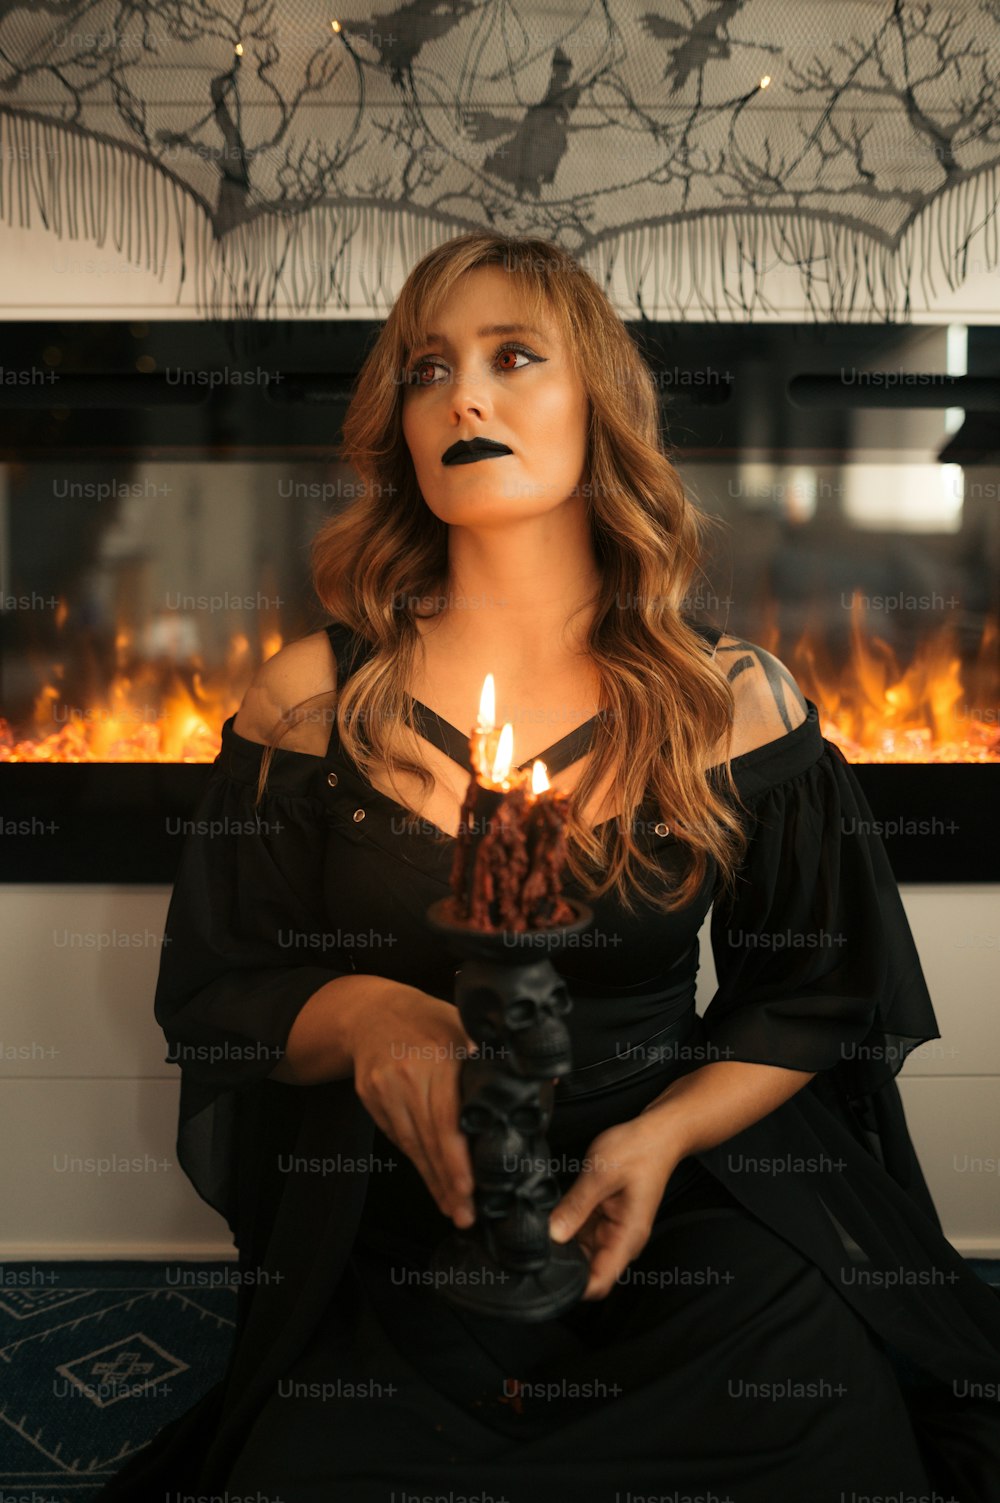 Eine Frau in einem schwarzen Kleid, die eine brennende Kerze hält